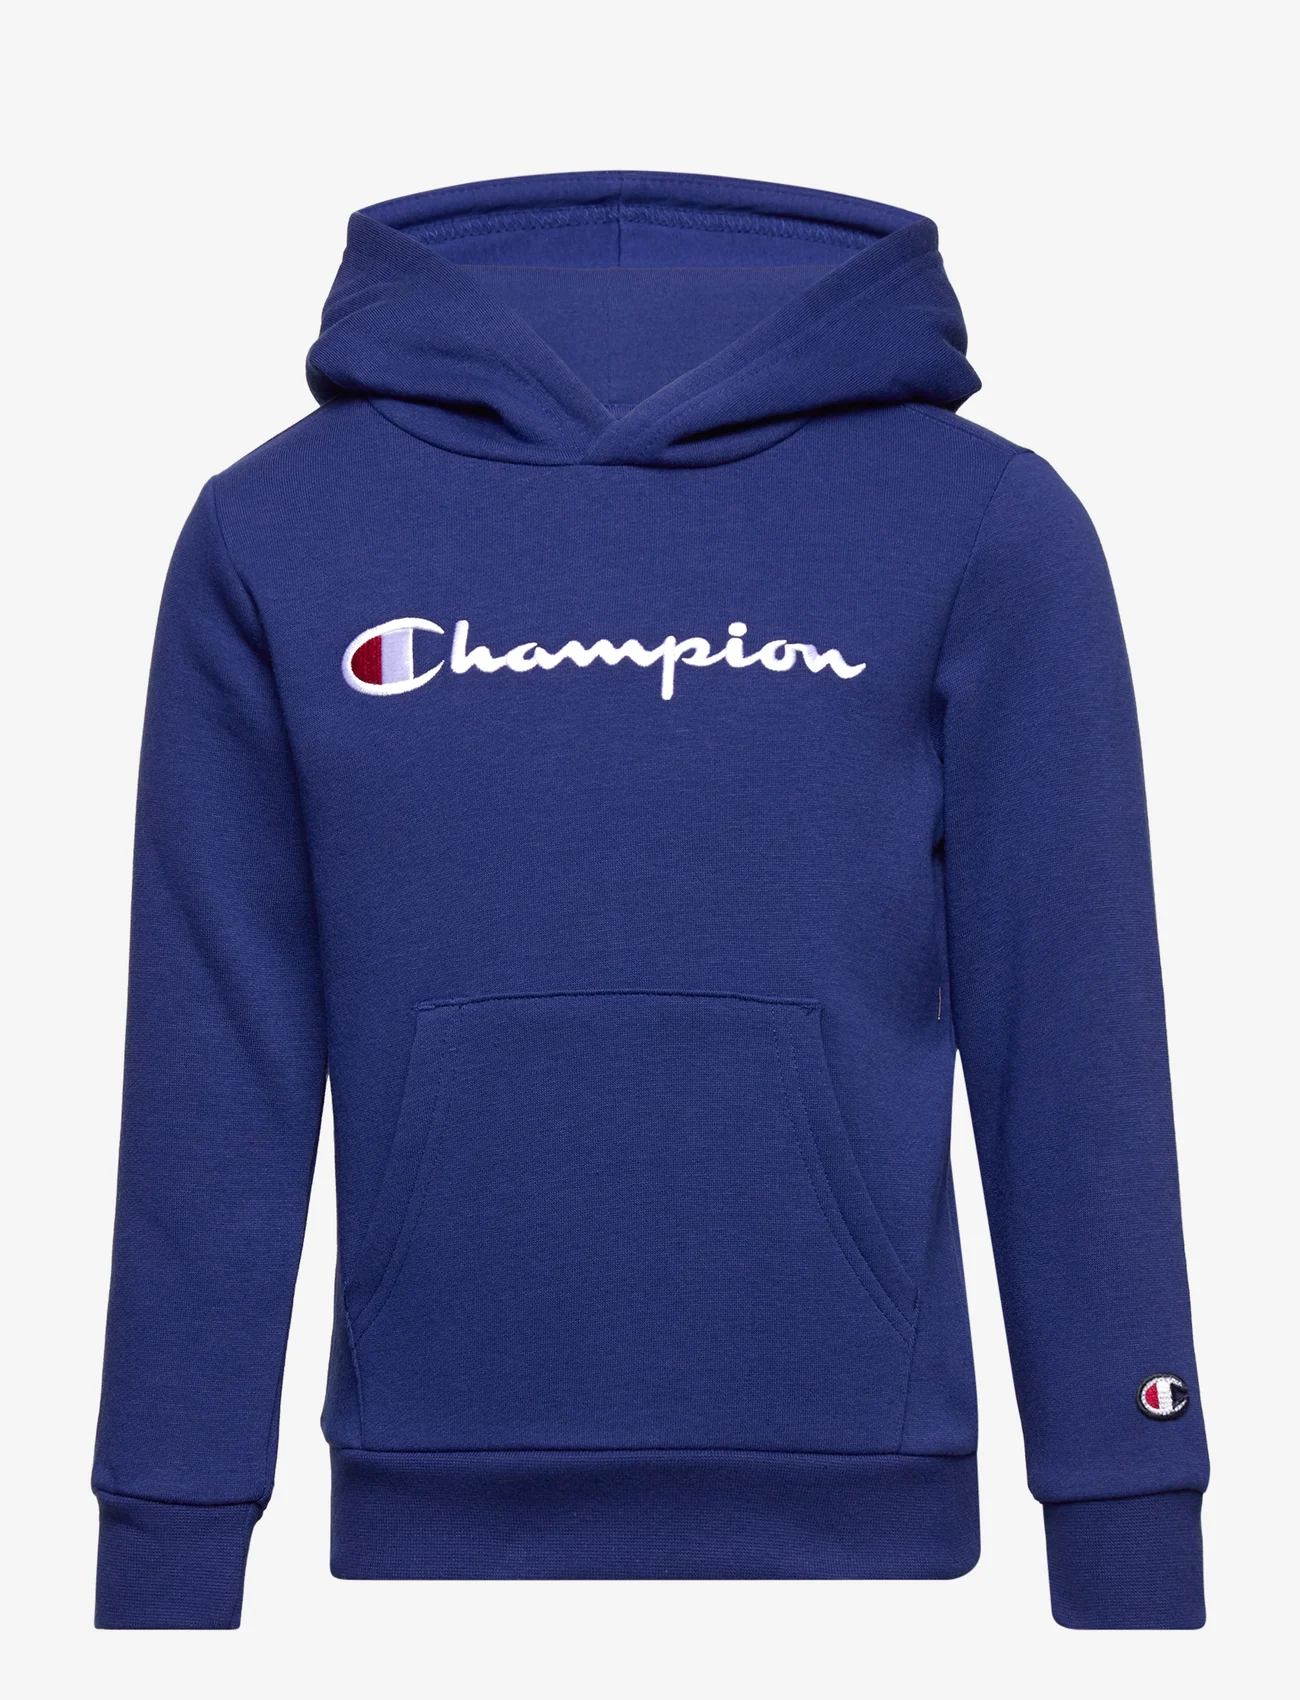 Champion - Hooded Sweatshirt - hoodies - bellwether blue - 0